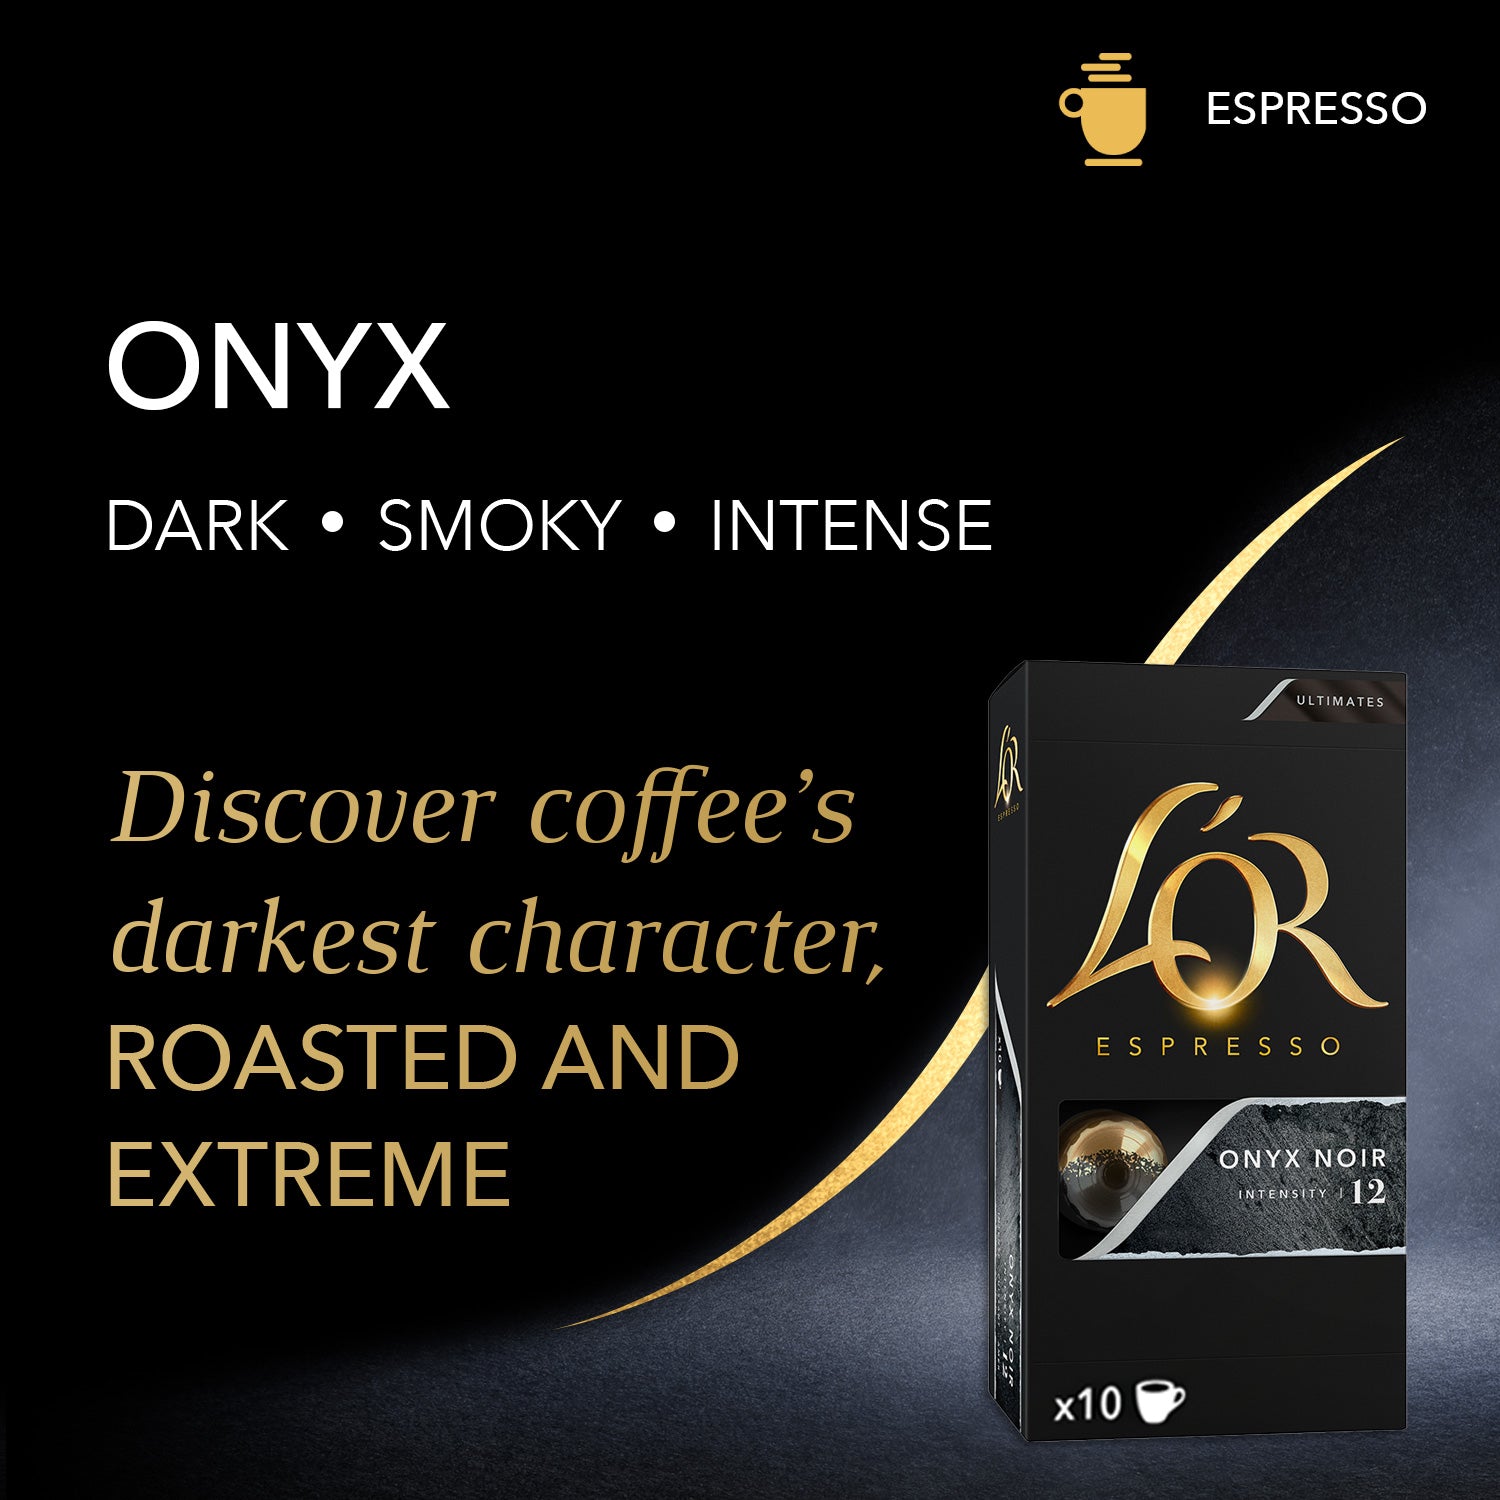 L'OR Espresso Coffee Capsules Onyx Box 10